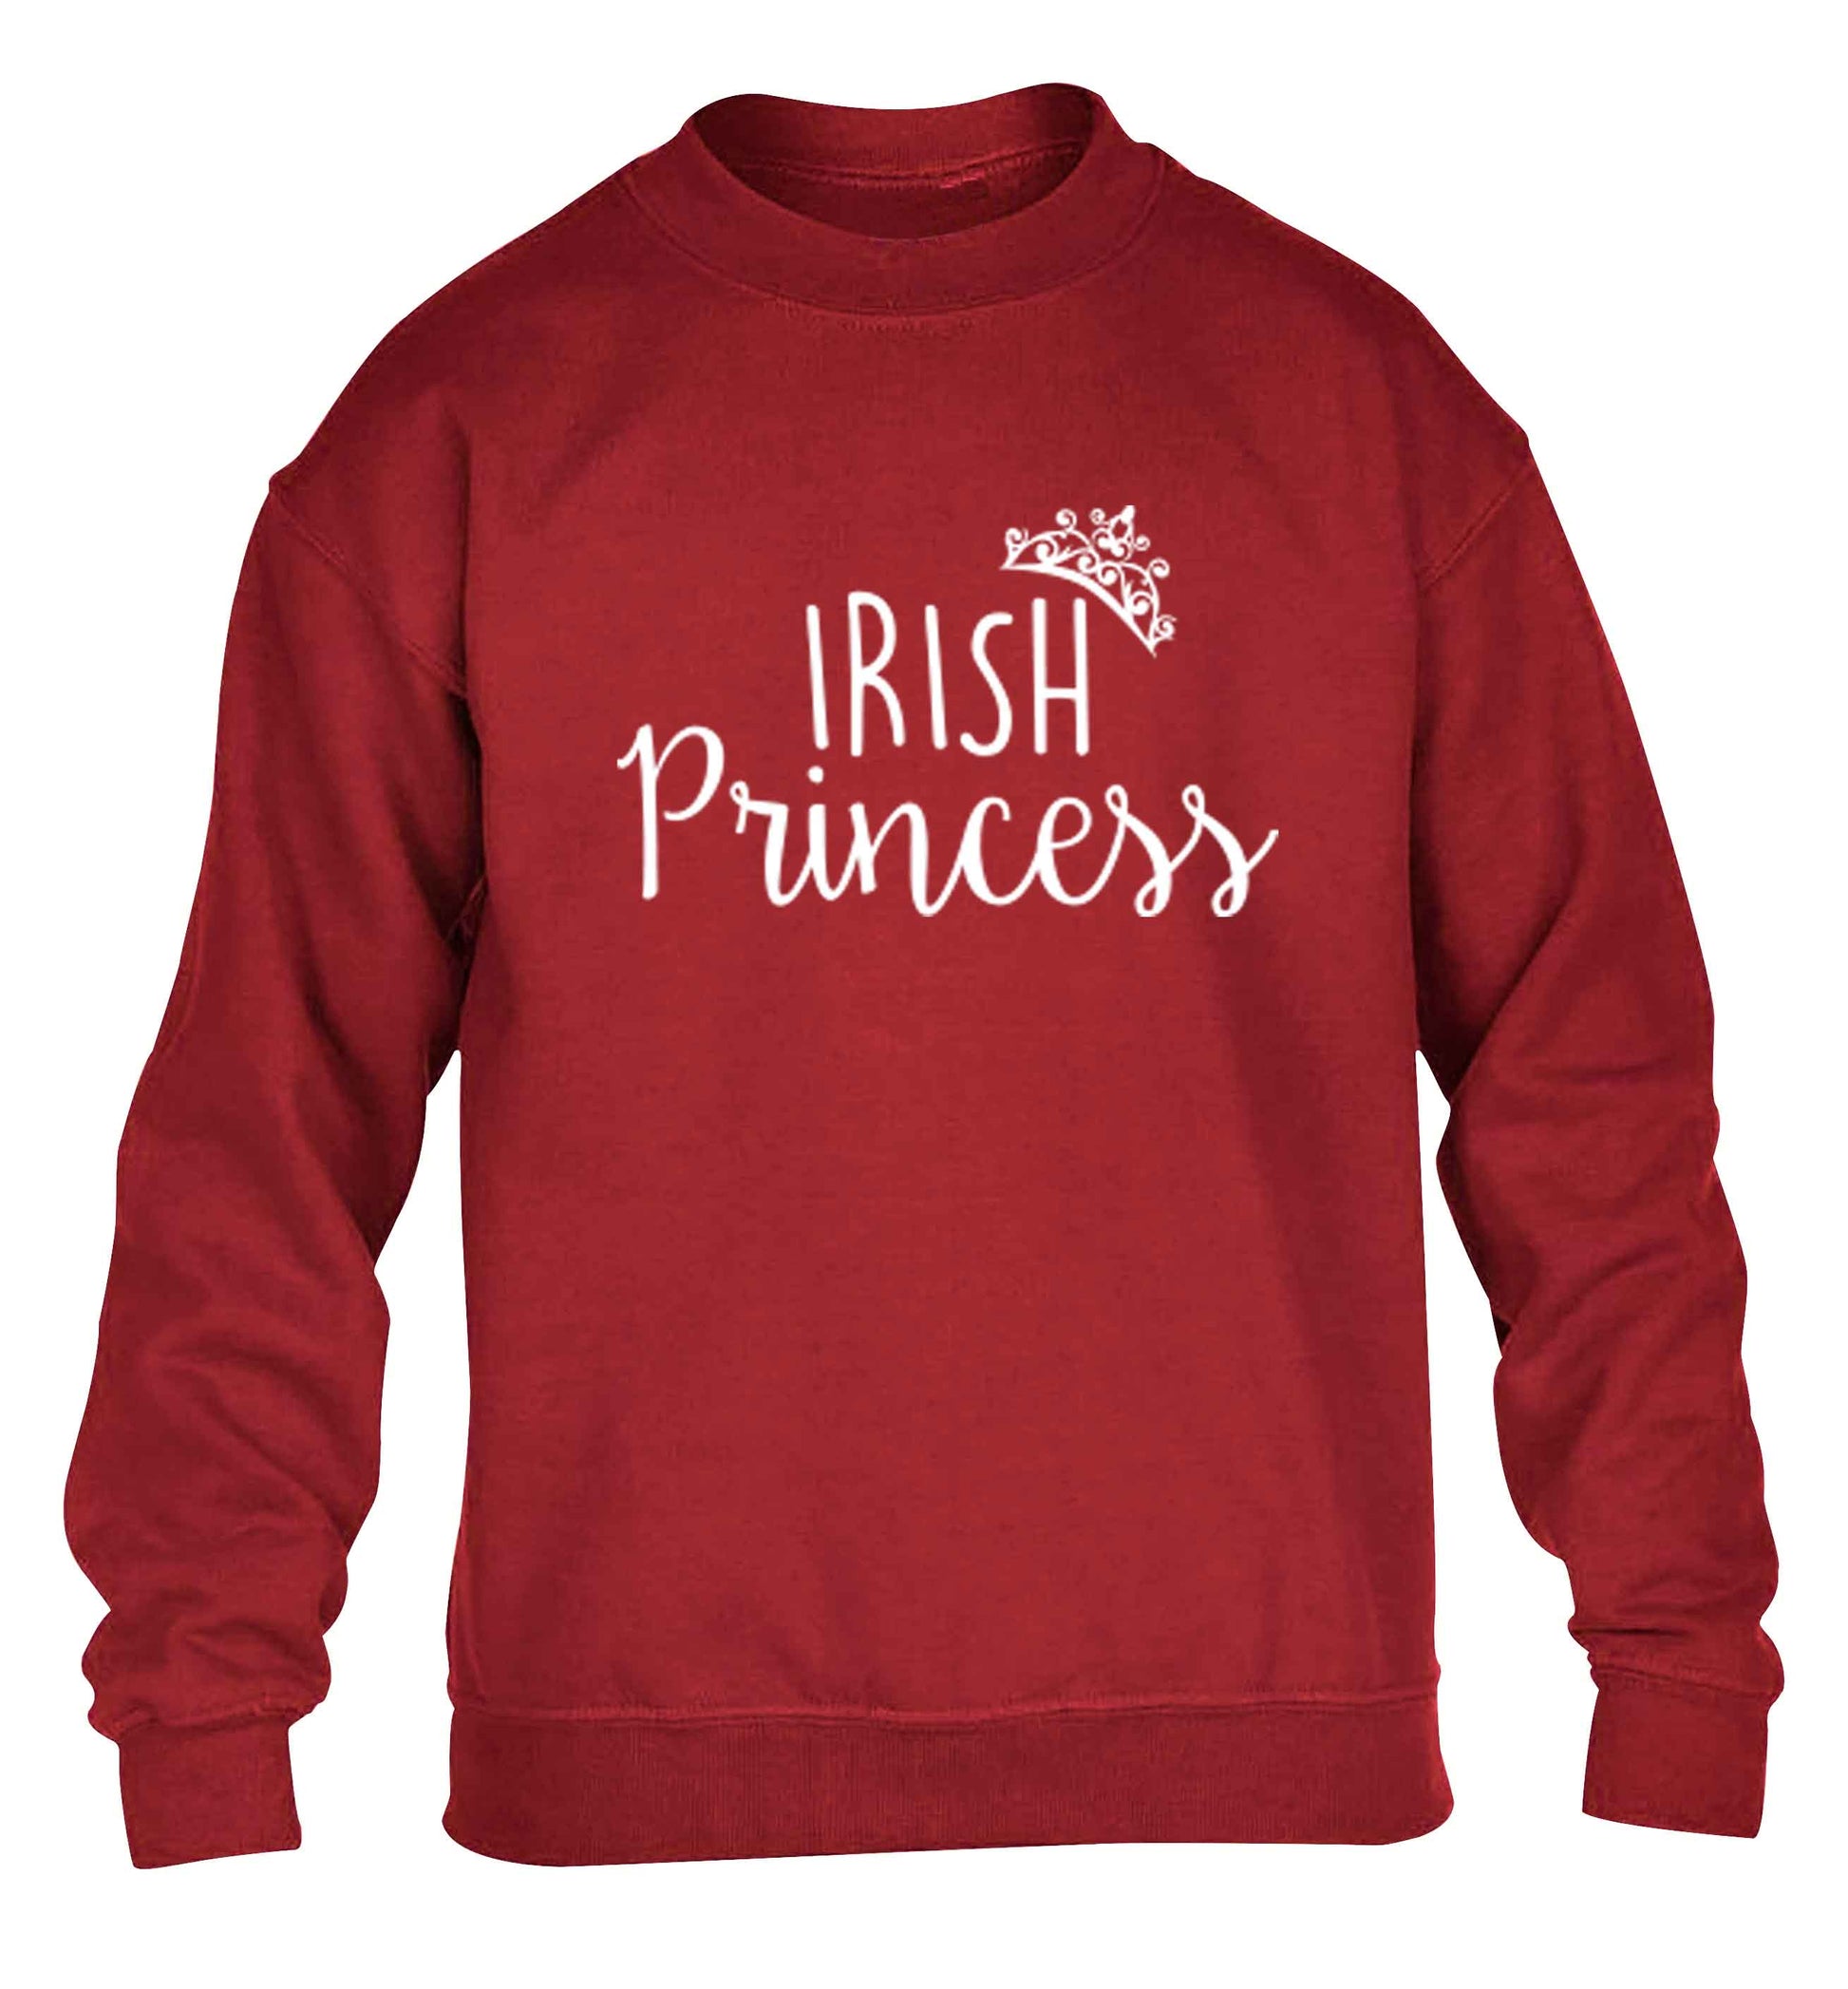 Irish princess children's grey sweater 12-13 Years